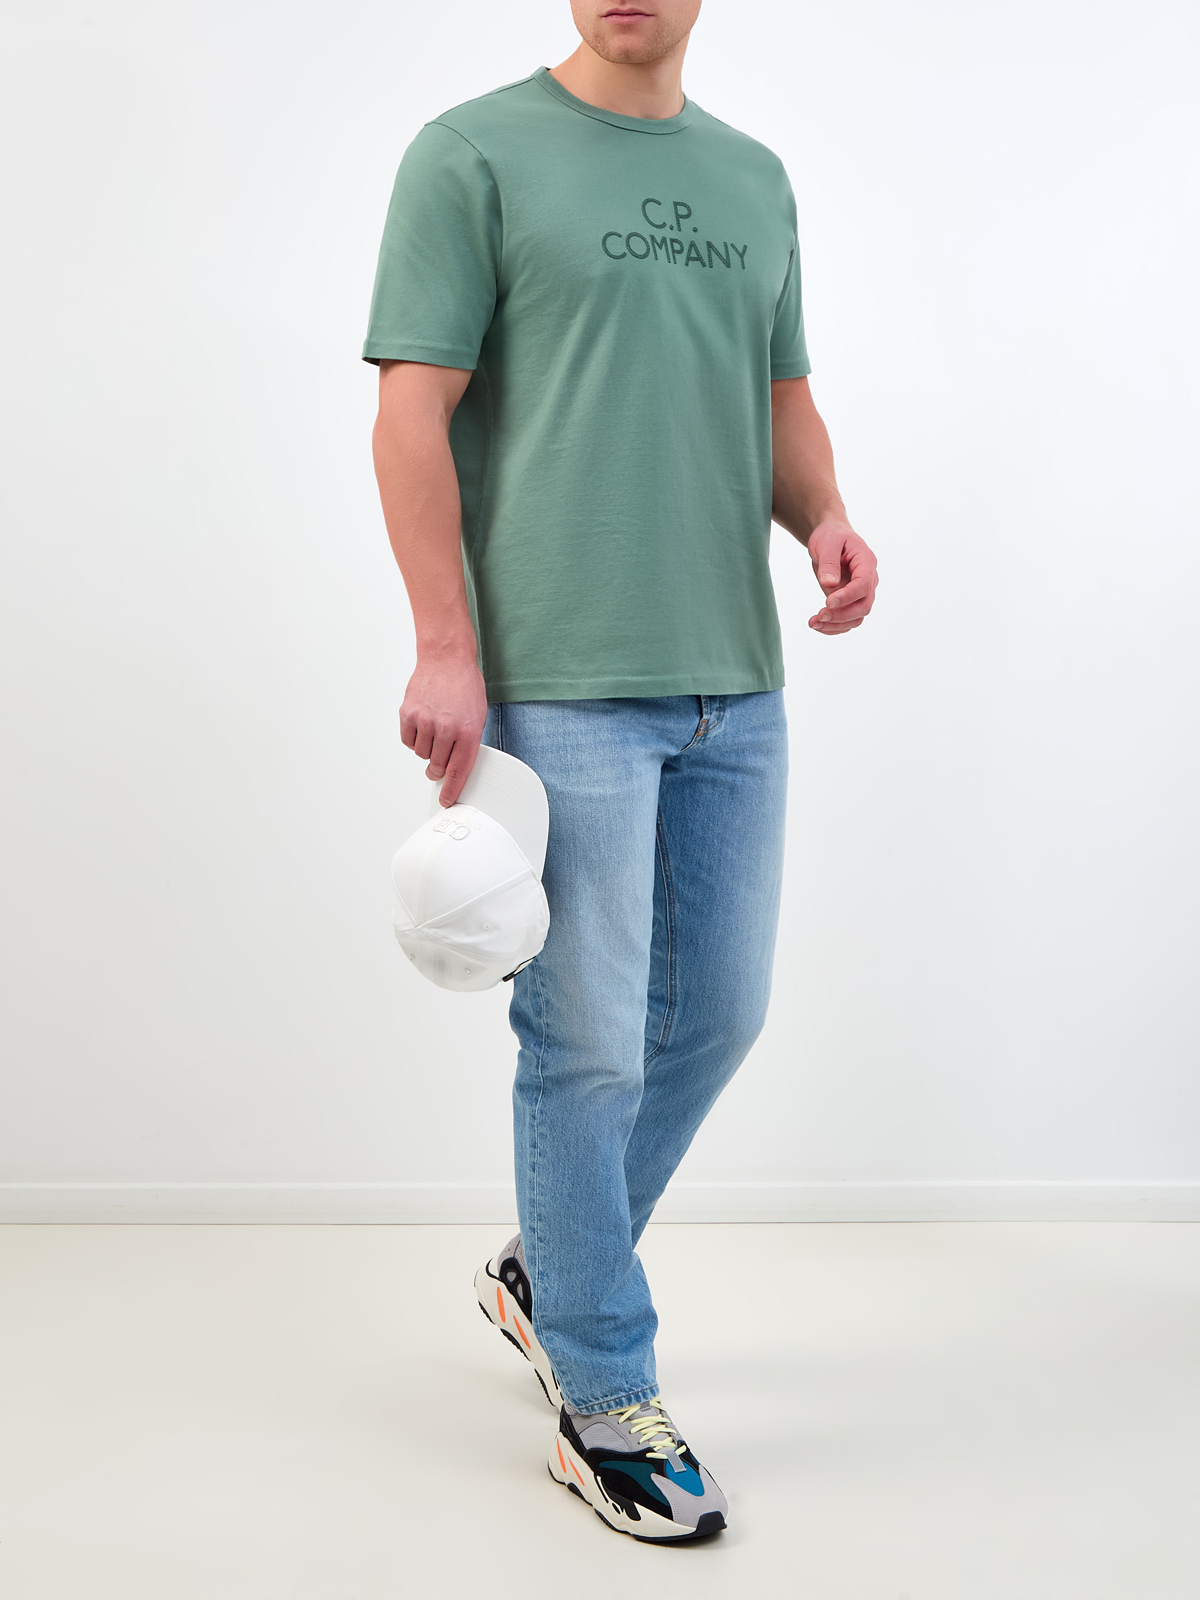 Футболка из плотного джерси с вышивкой в стиле леттеринг C.P.COMPANY, цвет зеленый, размер 48;50;52;54 - фото 2